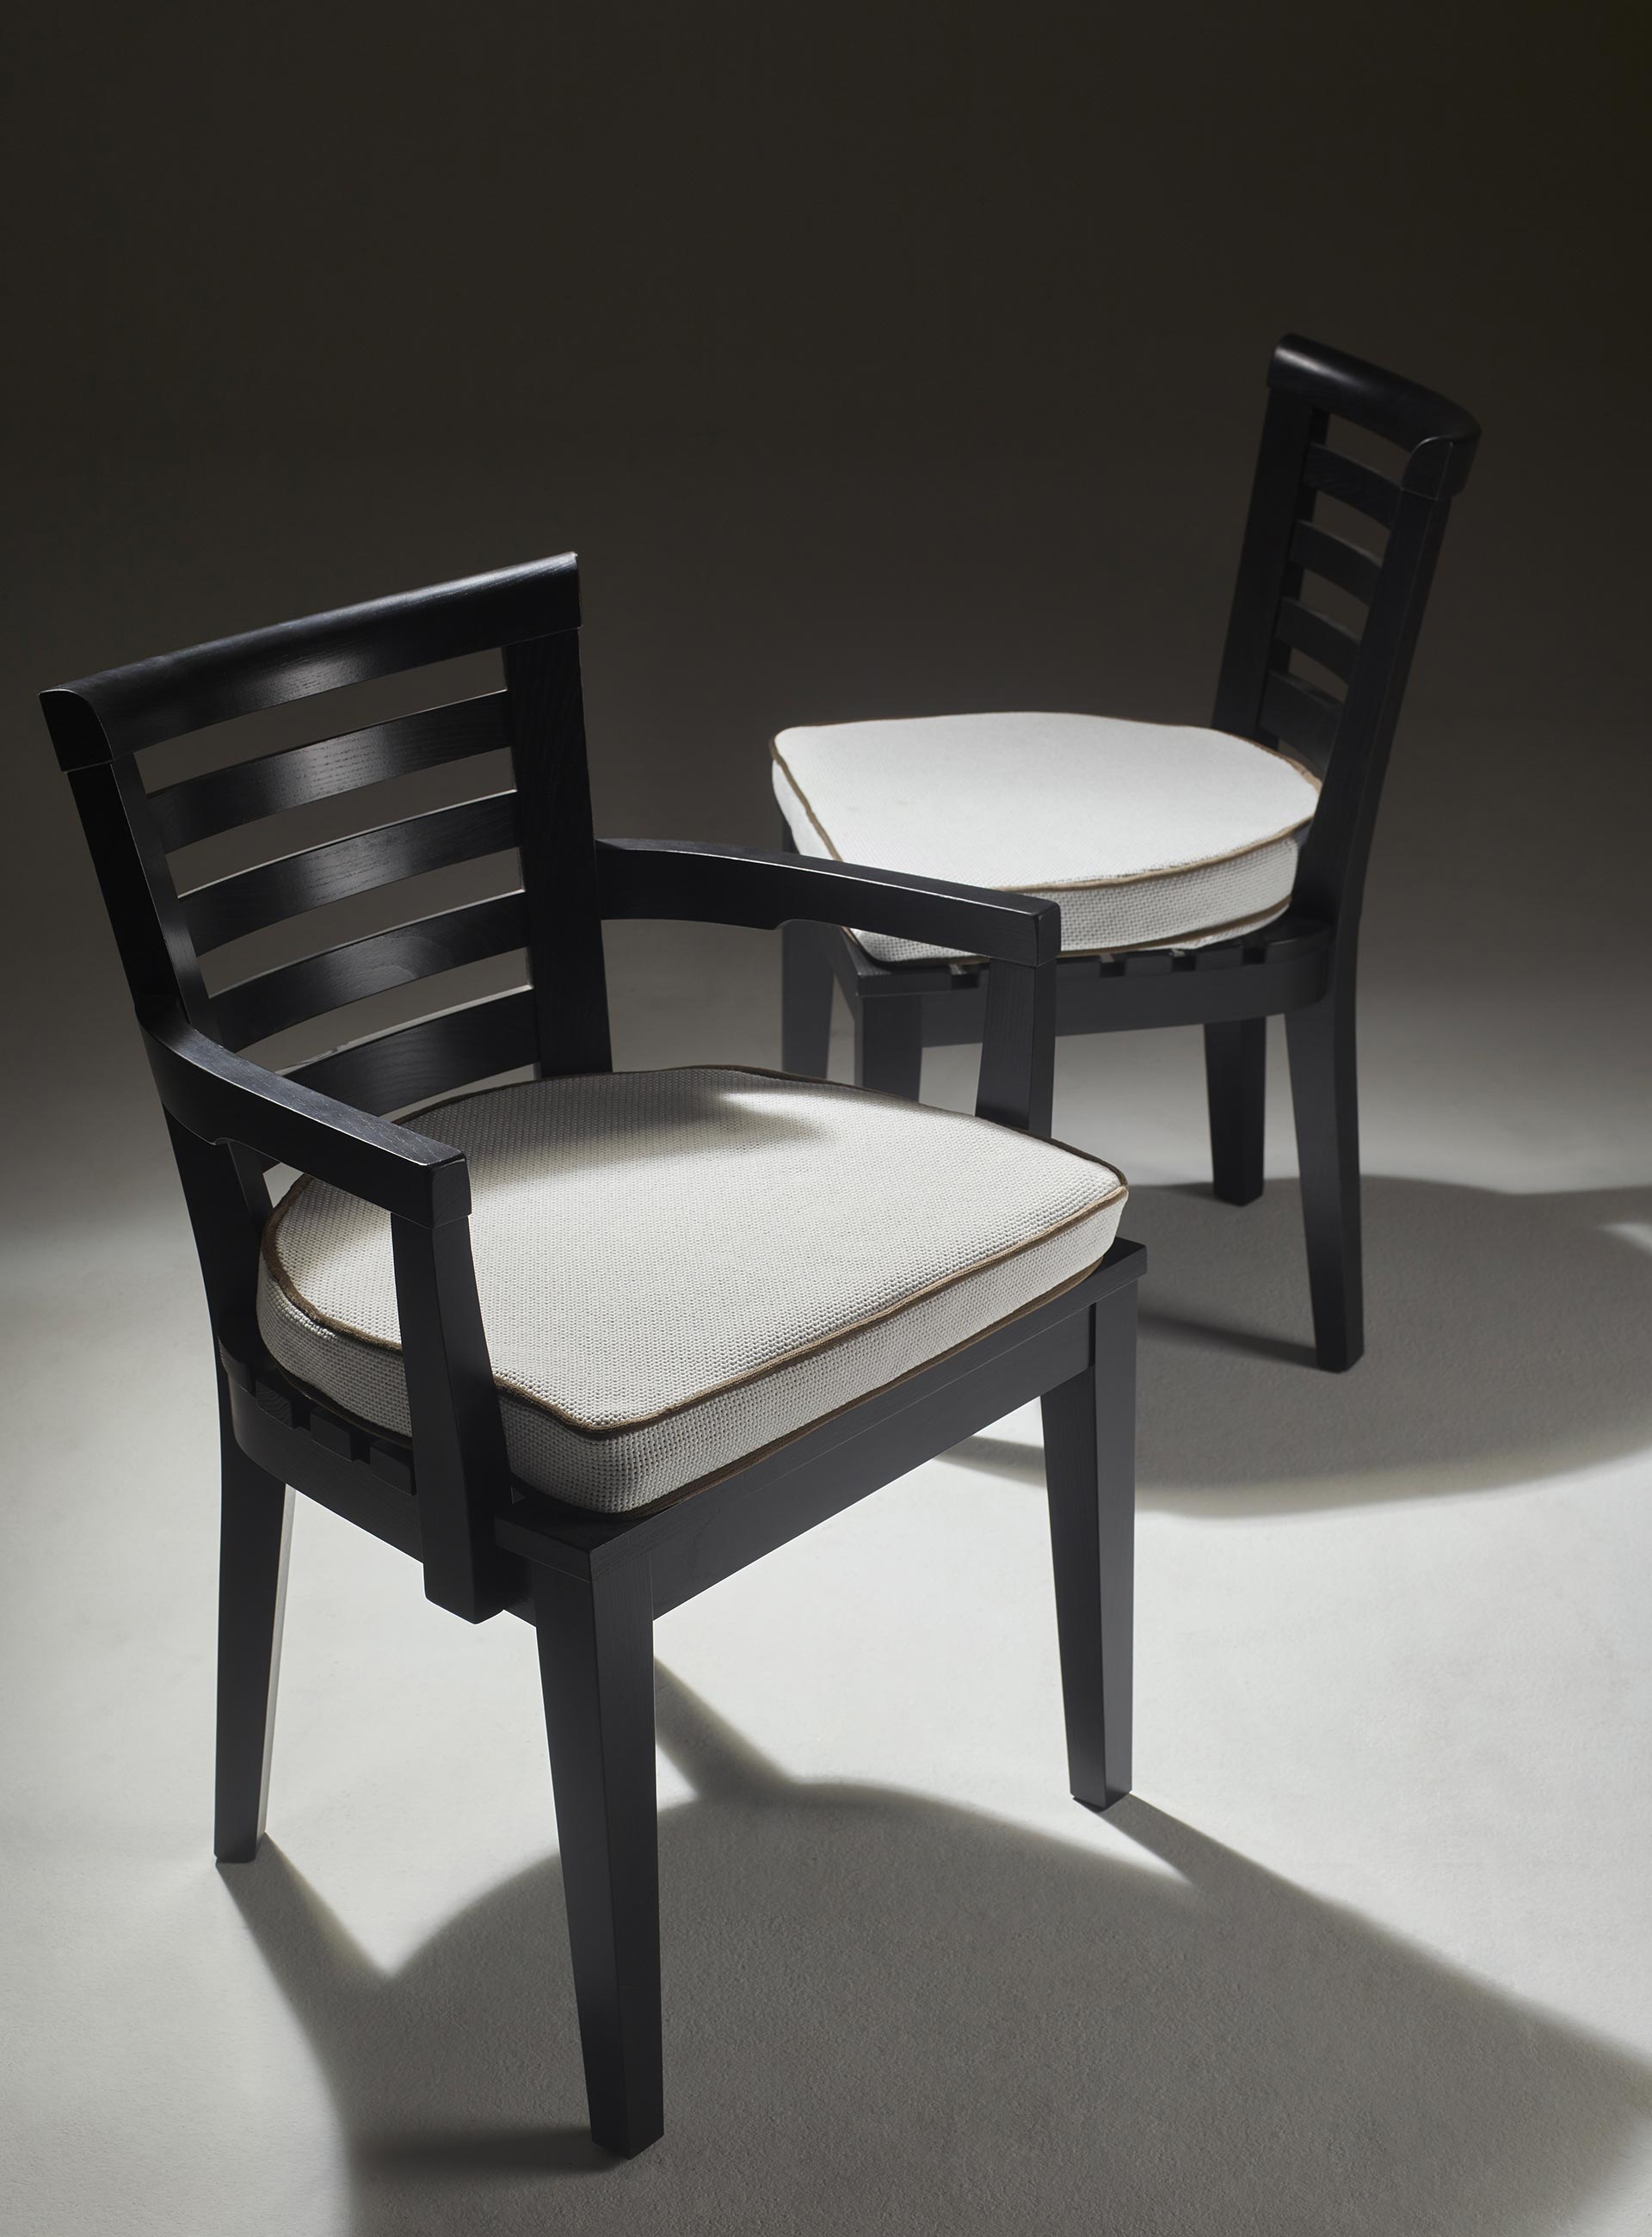 Varenna è una sedia da esterni in legno con o senza braccioli e cuscino in tessuto o pelle, del catalogo da esterni di Promemoria | Promemoria